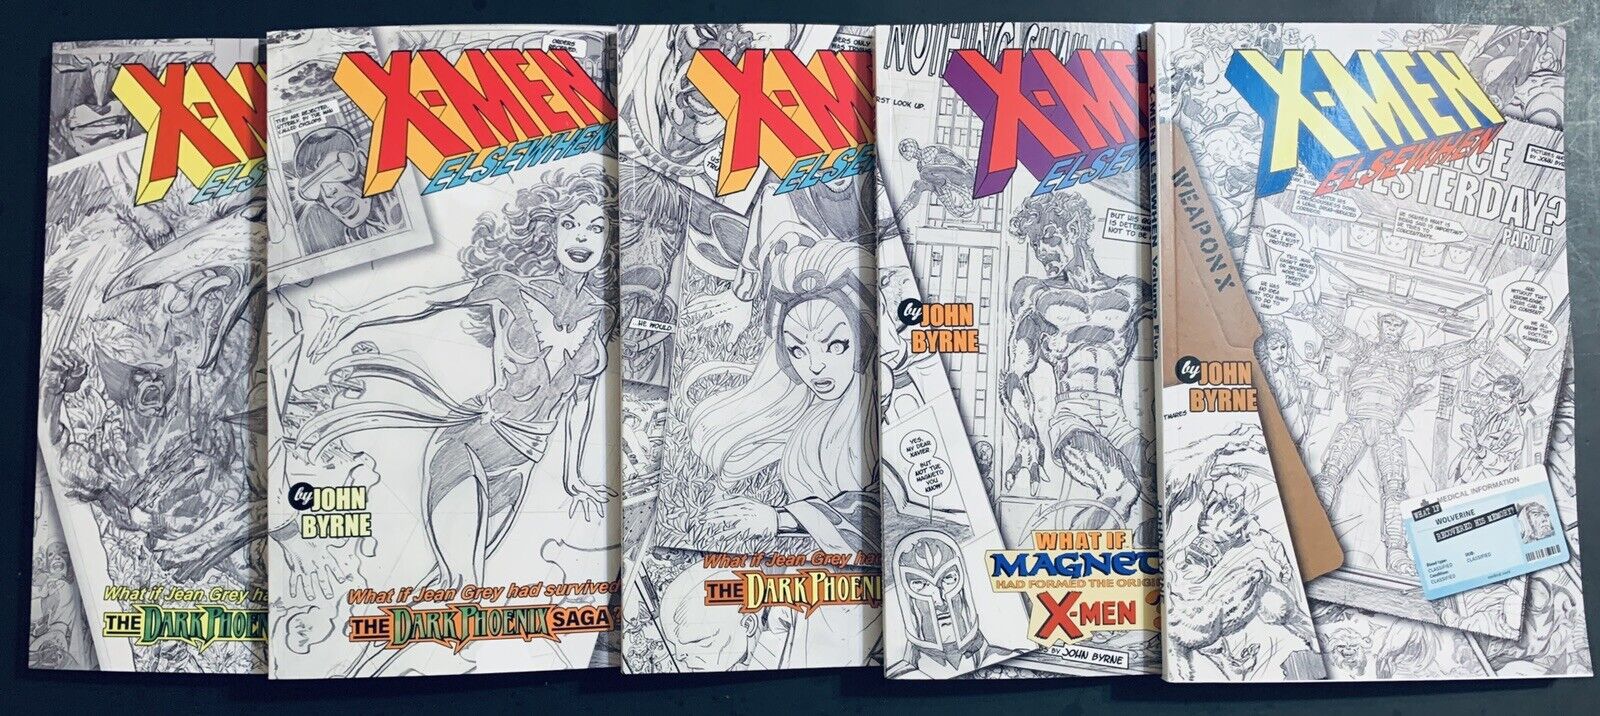 X-MEN ELSEWHEN Por JOHN BYRNE Volúmenes 1 2 3 4 5 JUEGO COMPLETO Colecciona SERIE COMPLETA